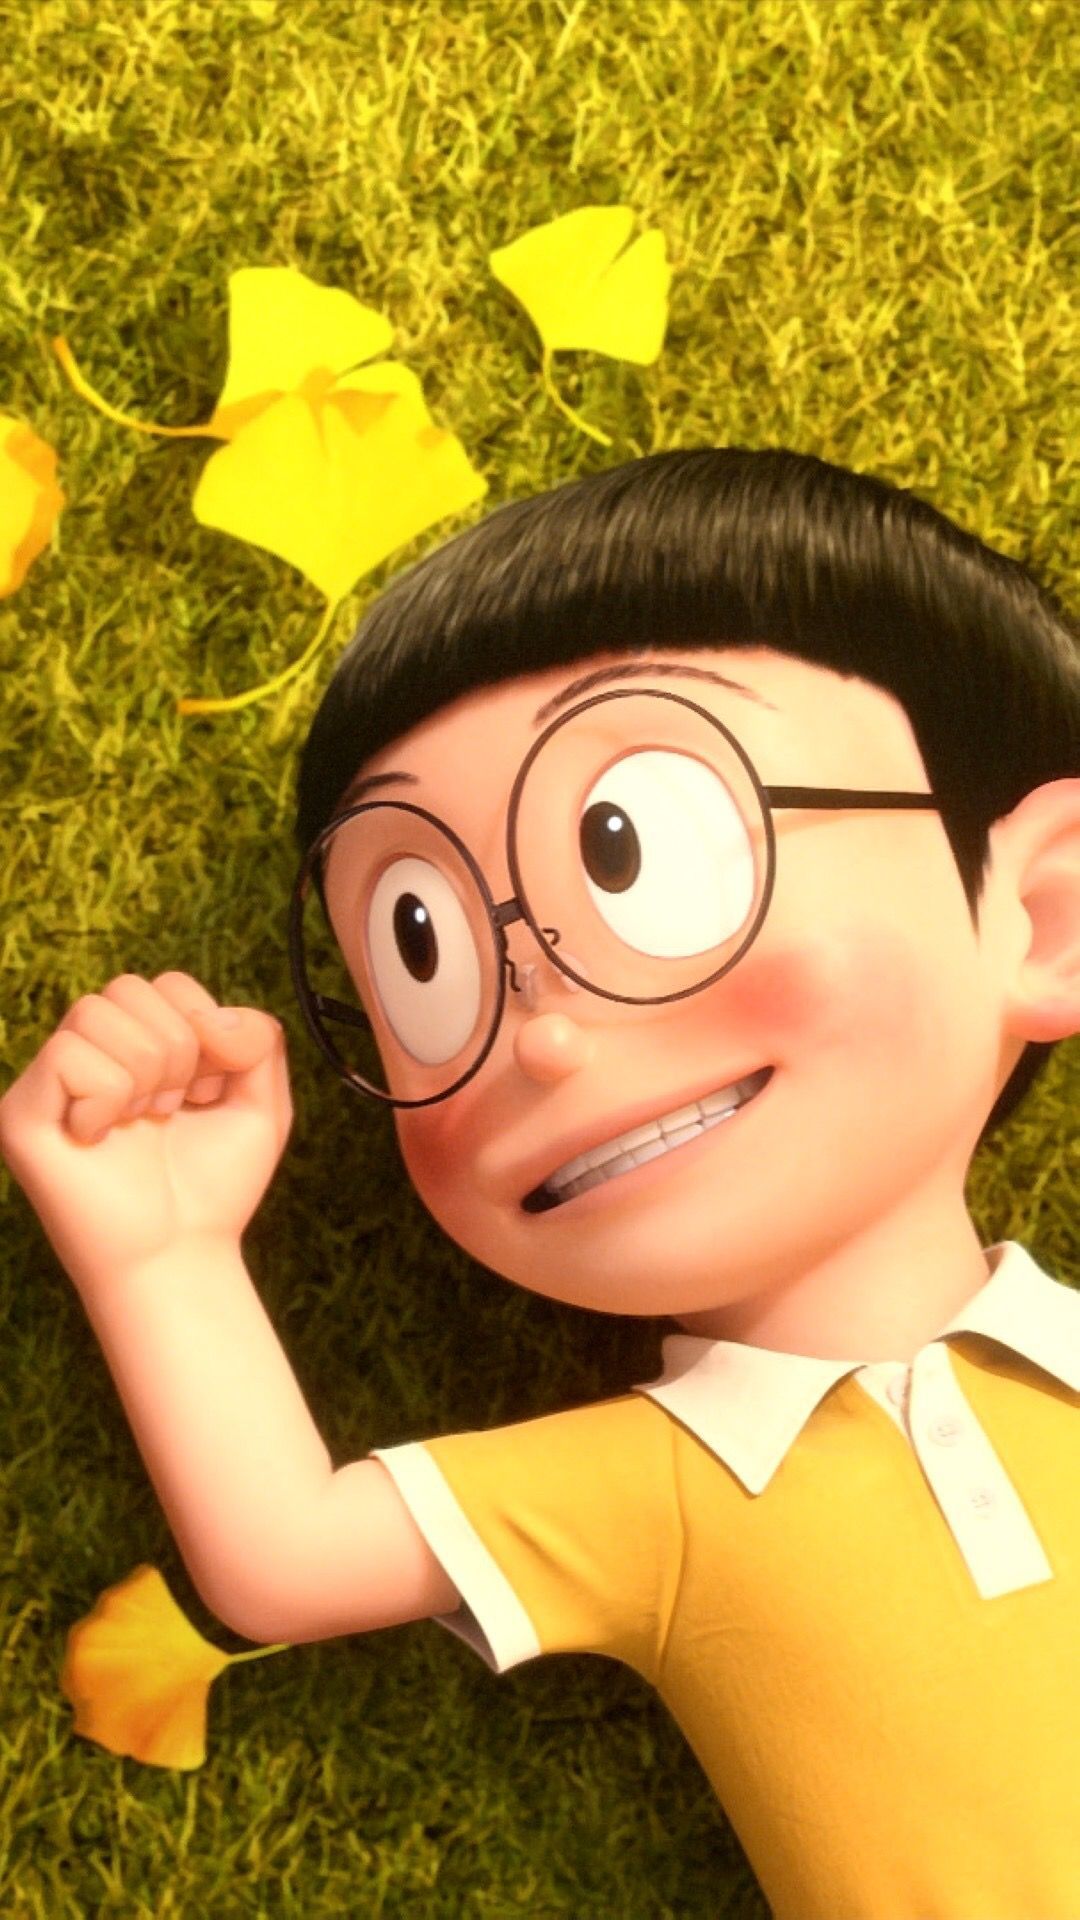 تويتر  ZERO PARSENT على تويتر Doremon shizuku Nobita doremon anime  wallpaper httpstco5eh6ey0ZQI